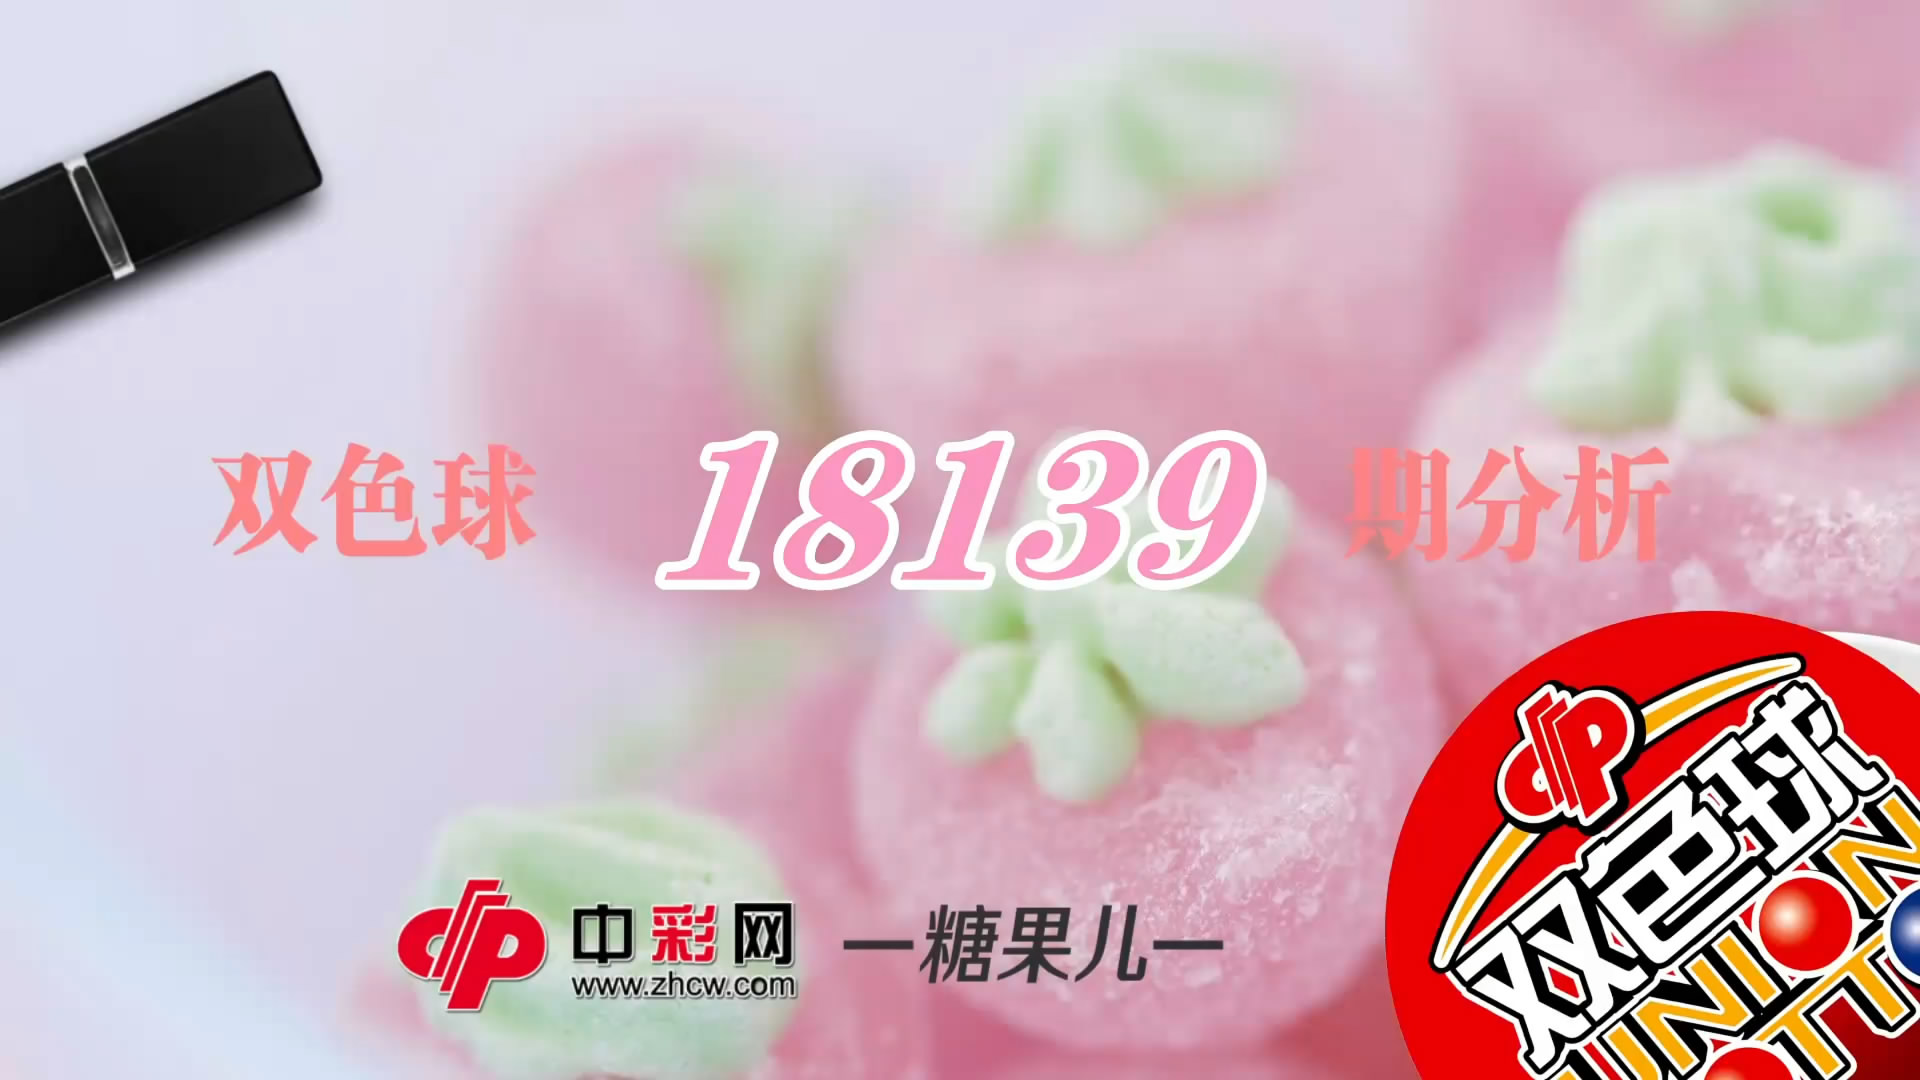 【中彩视频】糖果儿双色球第18139期